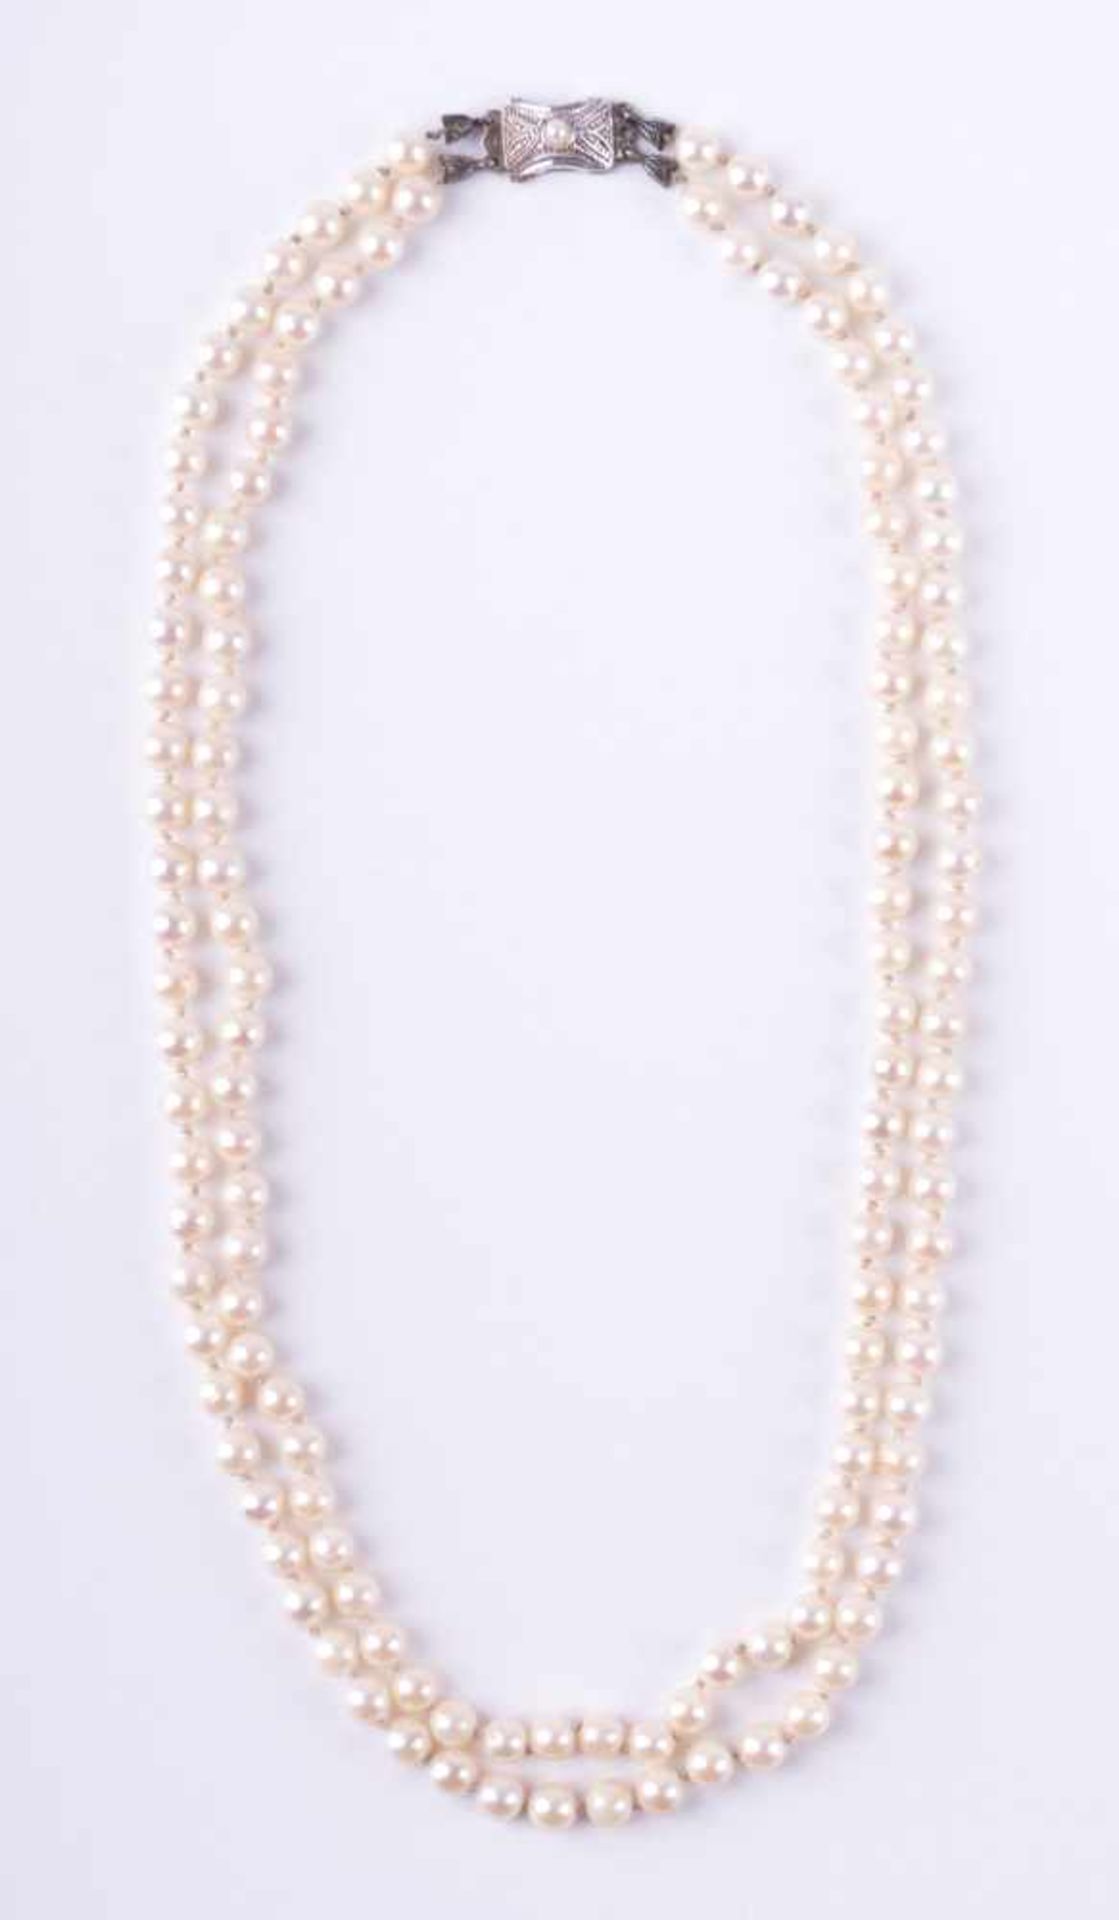 Perlenkette um 1930 Verschluss WG/GG 333/000 mit kleiner Perle besetzt, L: 47 cm Pearl necklace